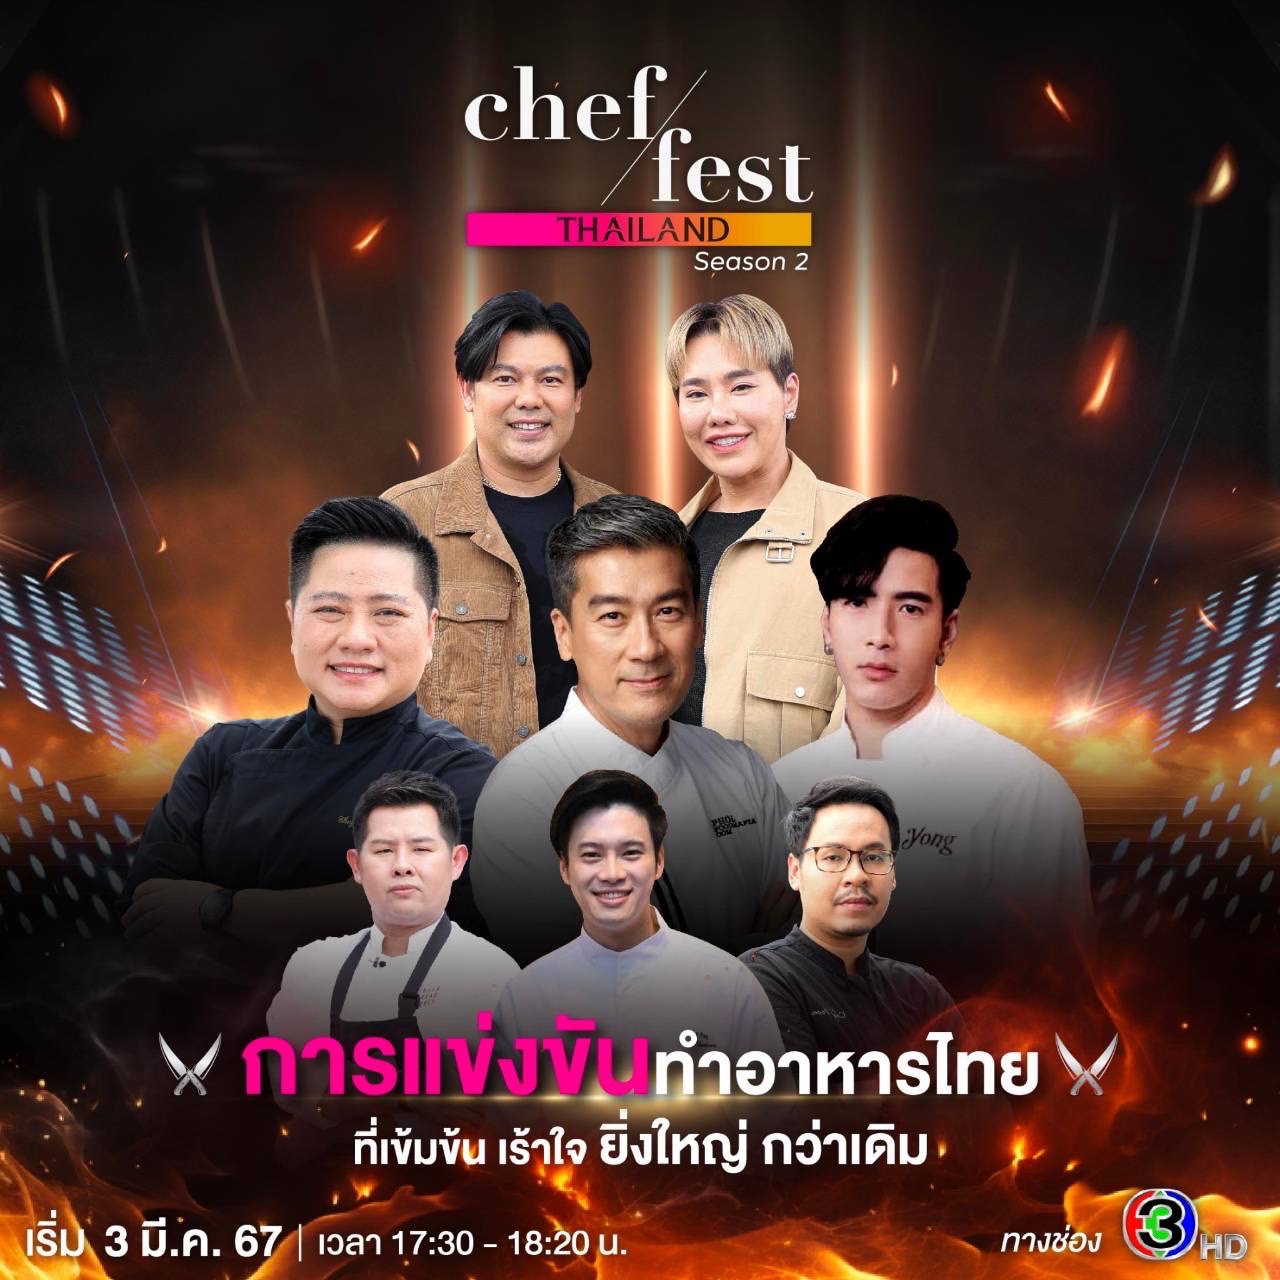 ละครช่อง 3 - Chef Fest Thailand season 2